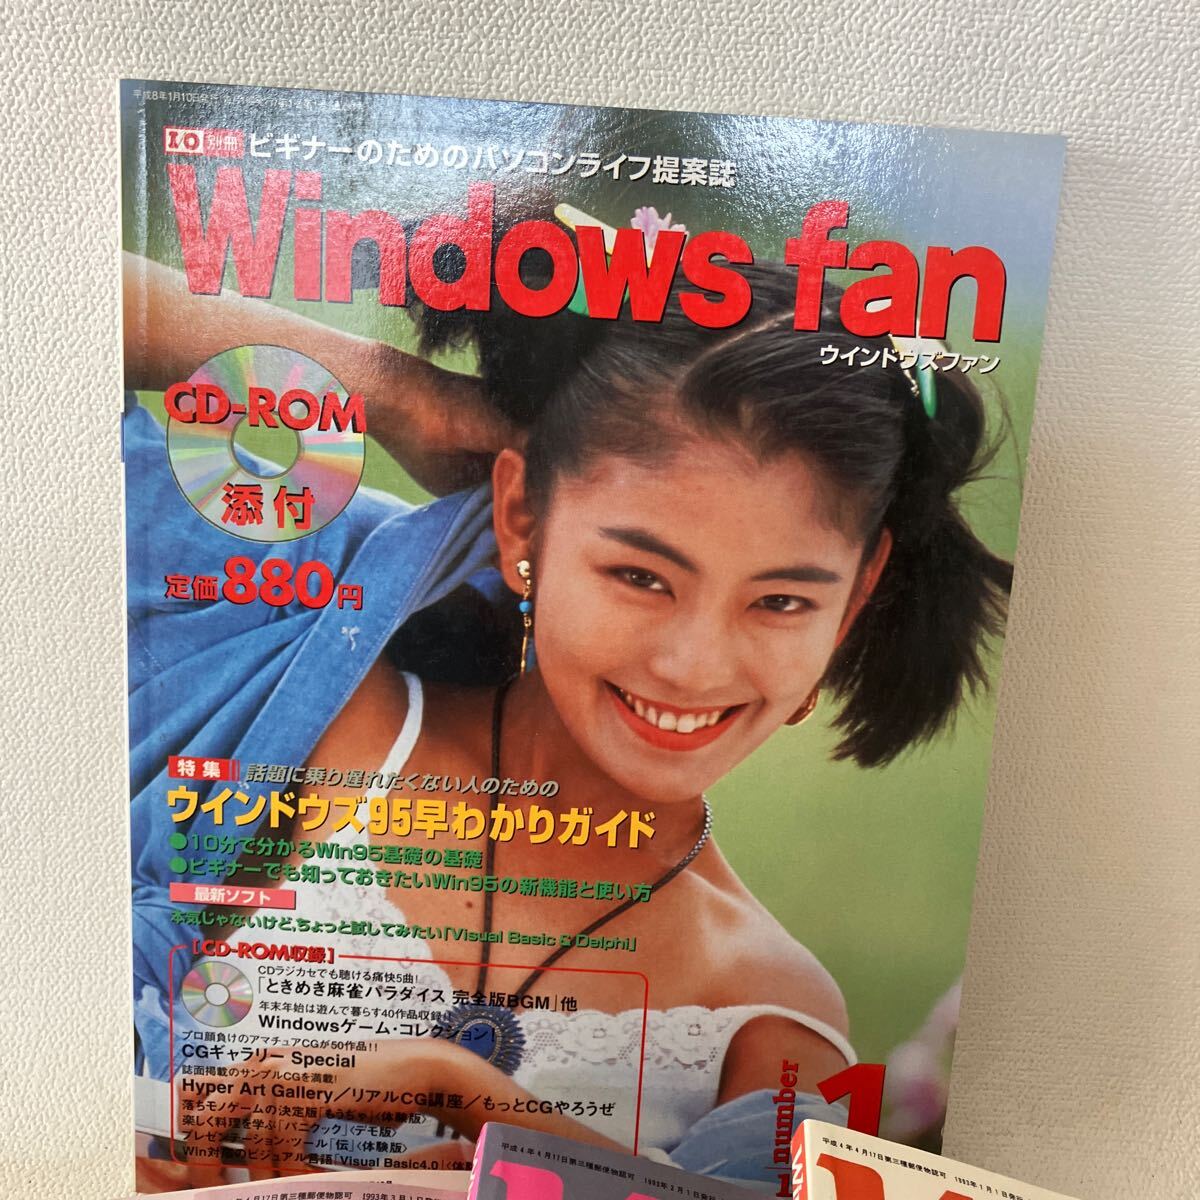 c354-13 80 журнал Windows Magazine окно z журнал вентилятор совместно персональный компьютер интернет дополнение часть нет 1993 1996 загрязнения есть 